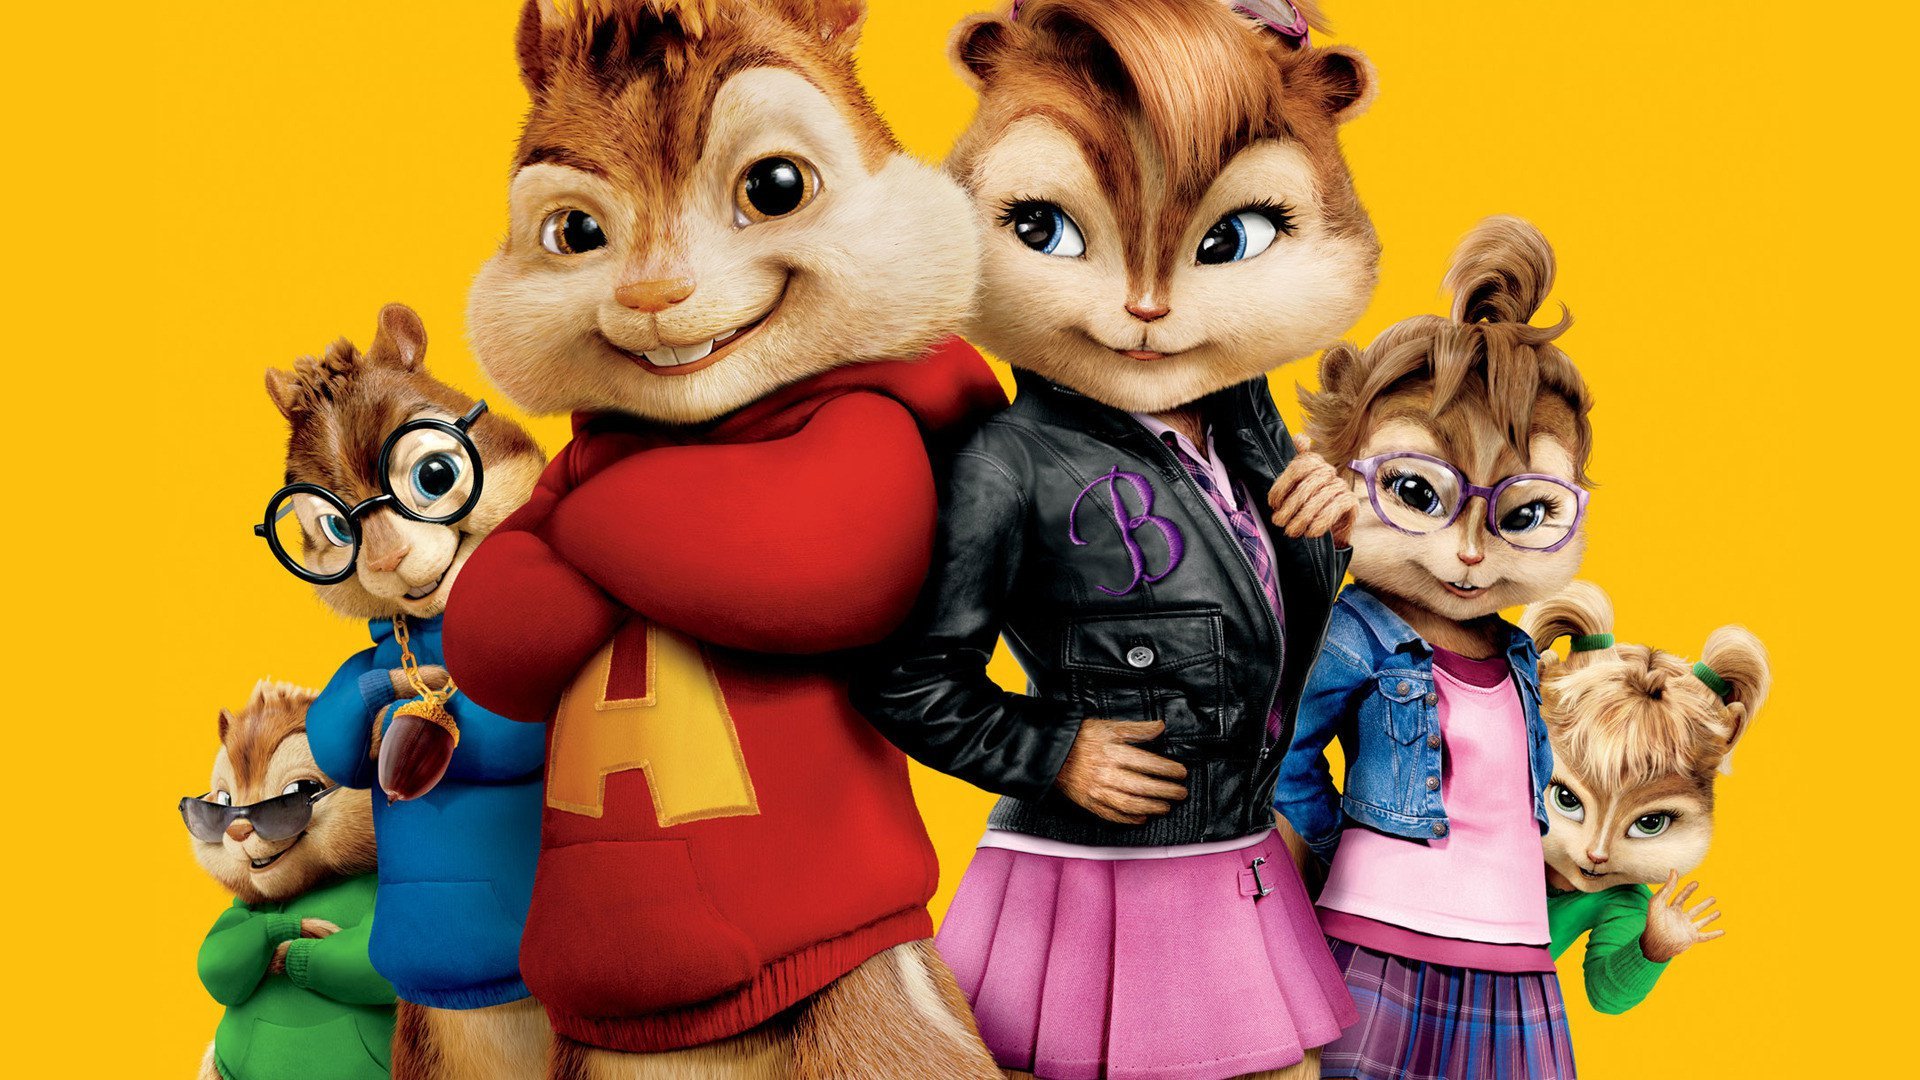 ელვინი და თახვები 2 / Alvin and the Chipmunks: The Squeakquel ქართულად